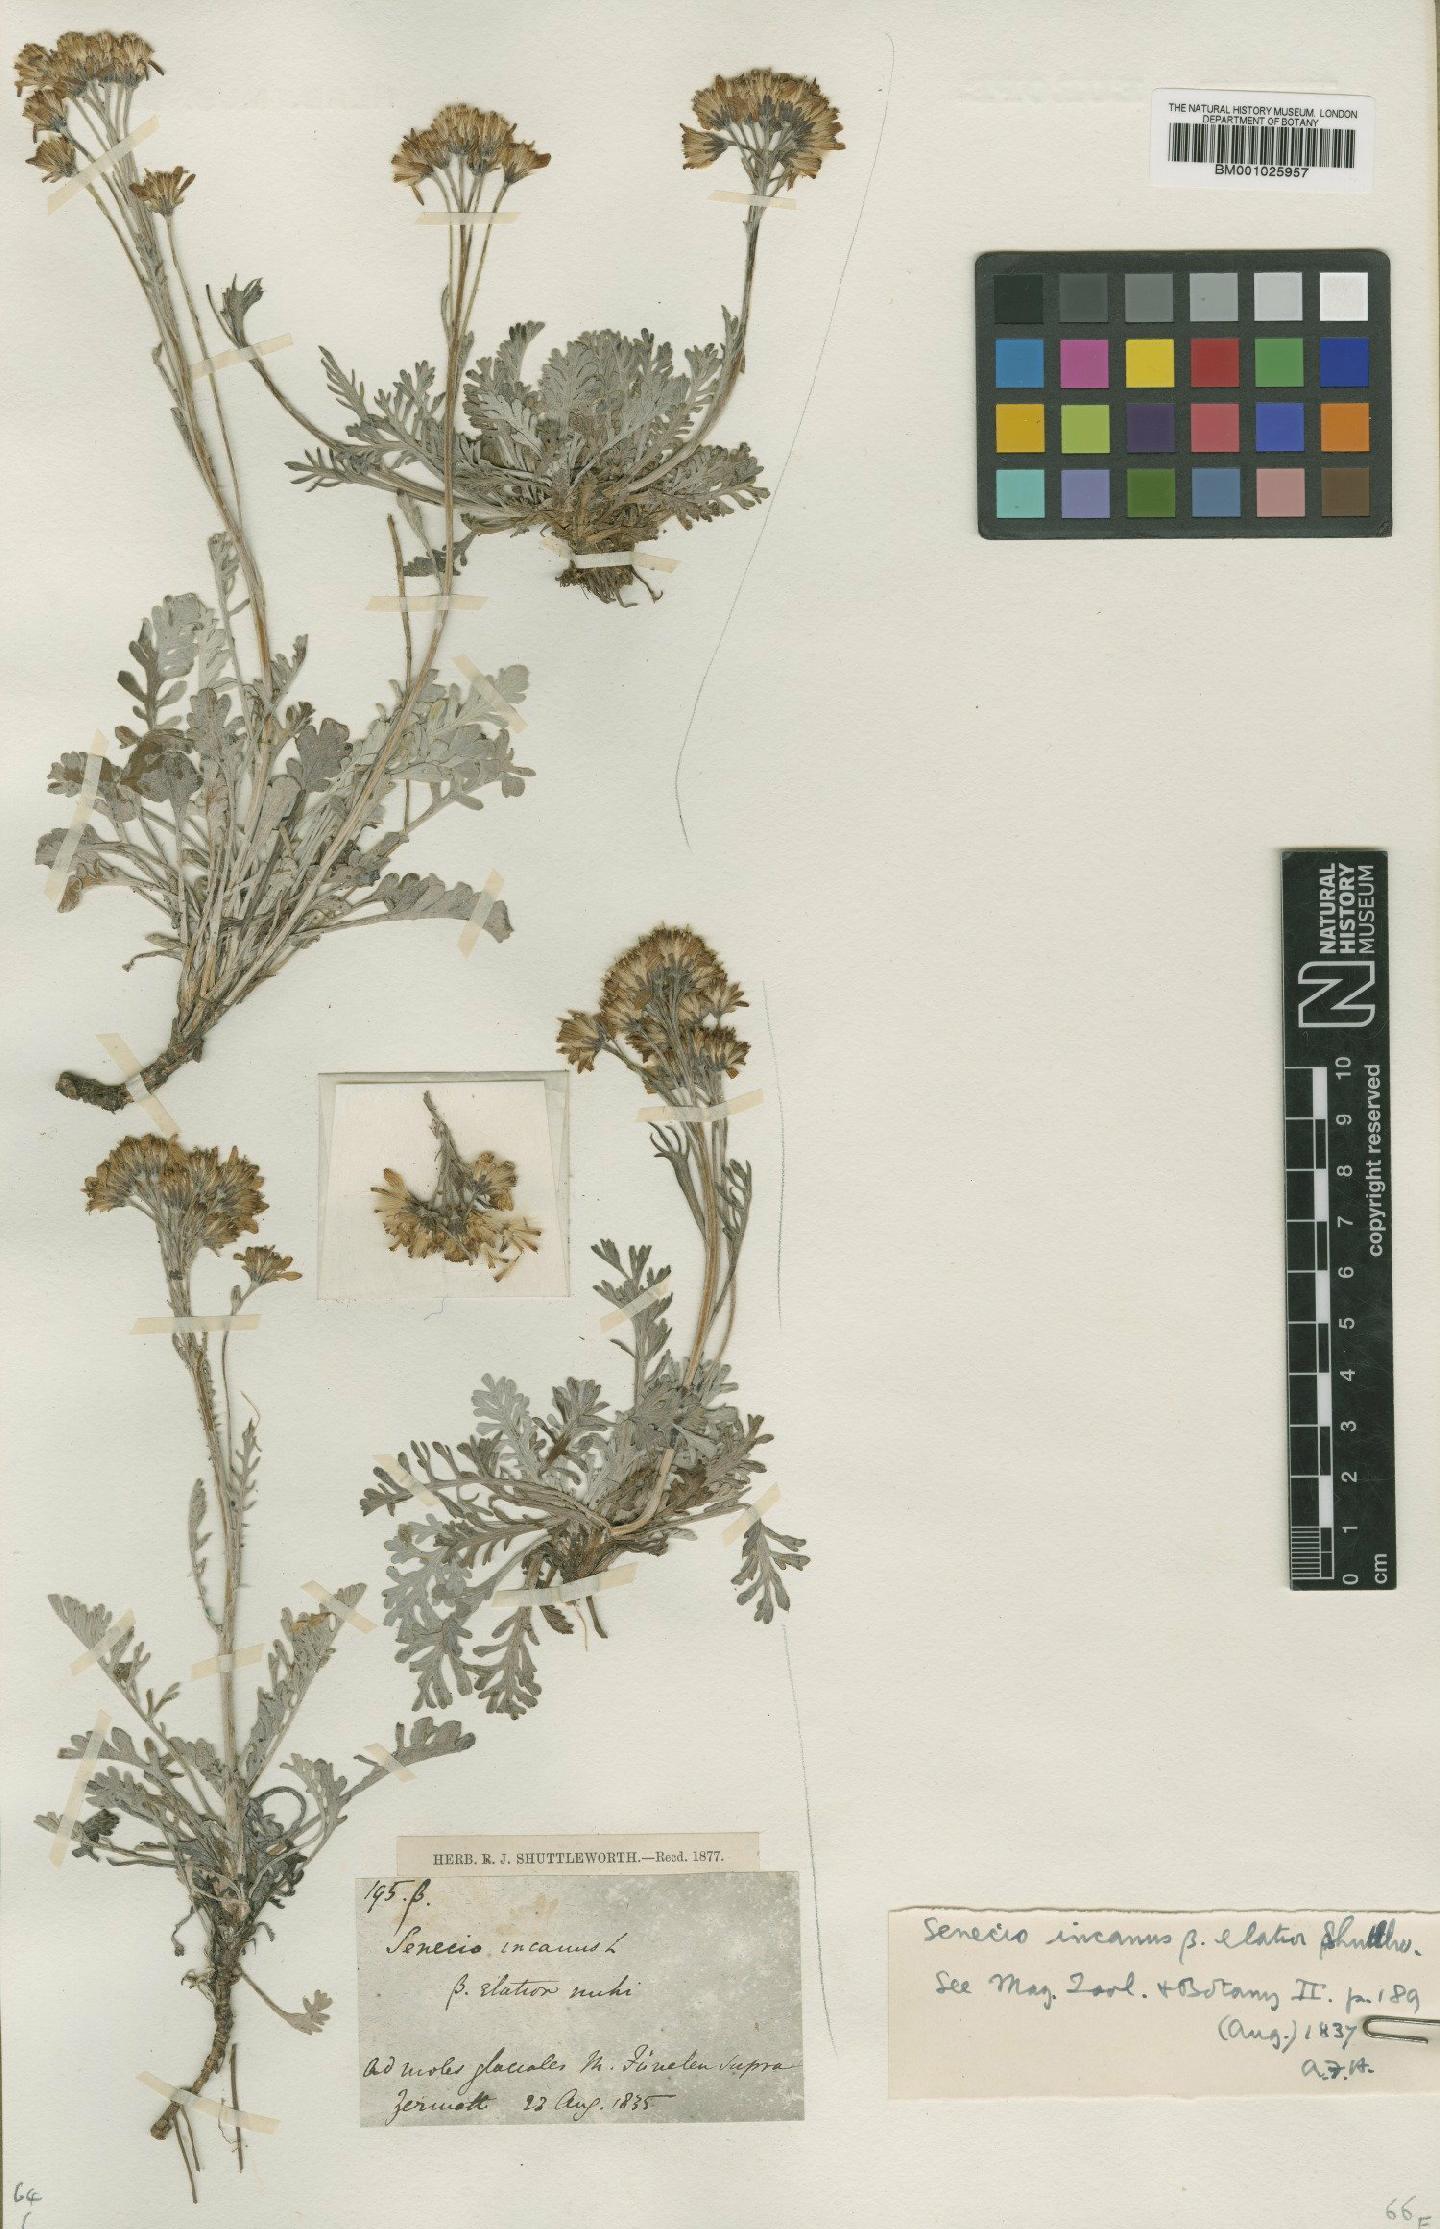 To NHMUK collection (Senecio incanus subsp. incanus L.; Type; NHMUK:ecatalogue:1921146)